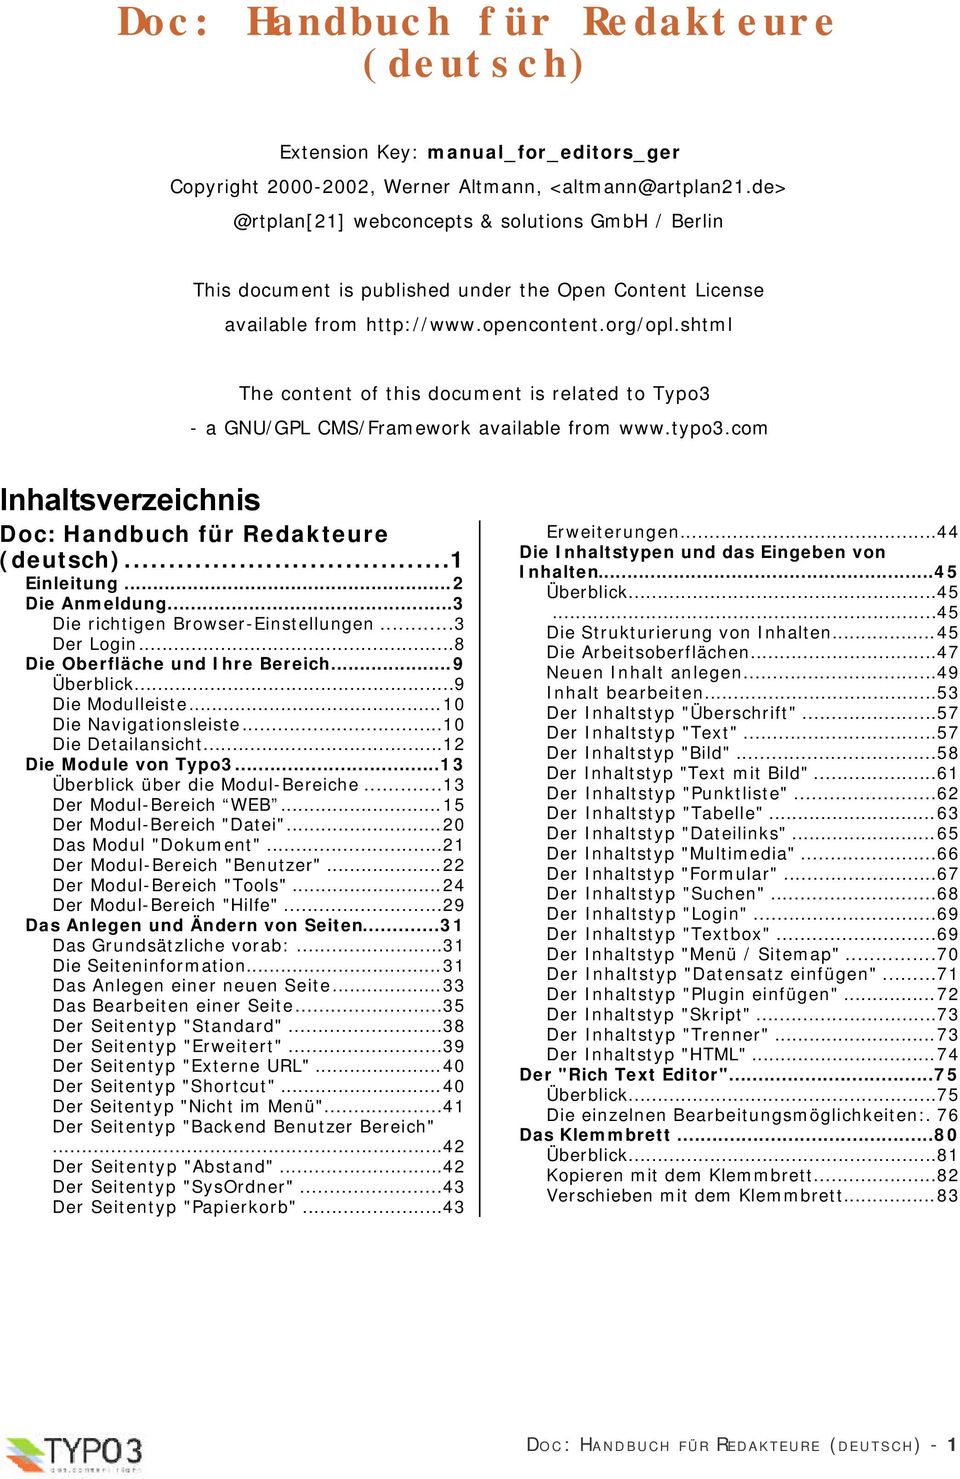 shtml The content of this document is related to Typo3 - a GNU/GPL CMS/Framework available from www.typo3.com Inhaltsverzeichnis Doc: Handbuch für Redakteure (deutsch)...1 Einleitung...2 Die Anmeldung.